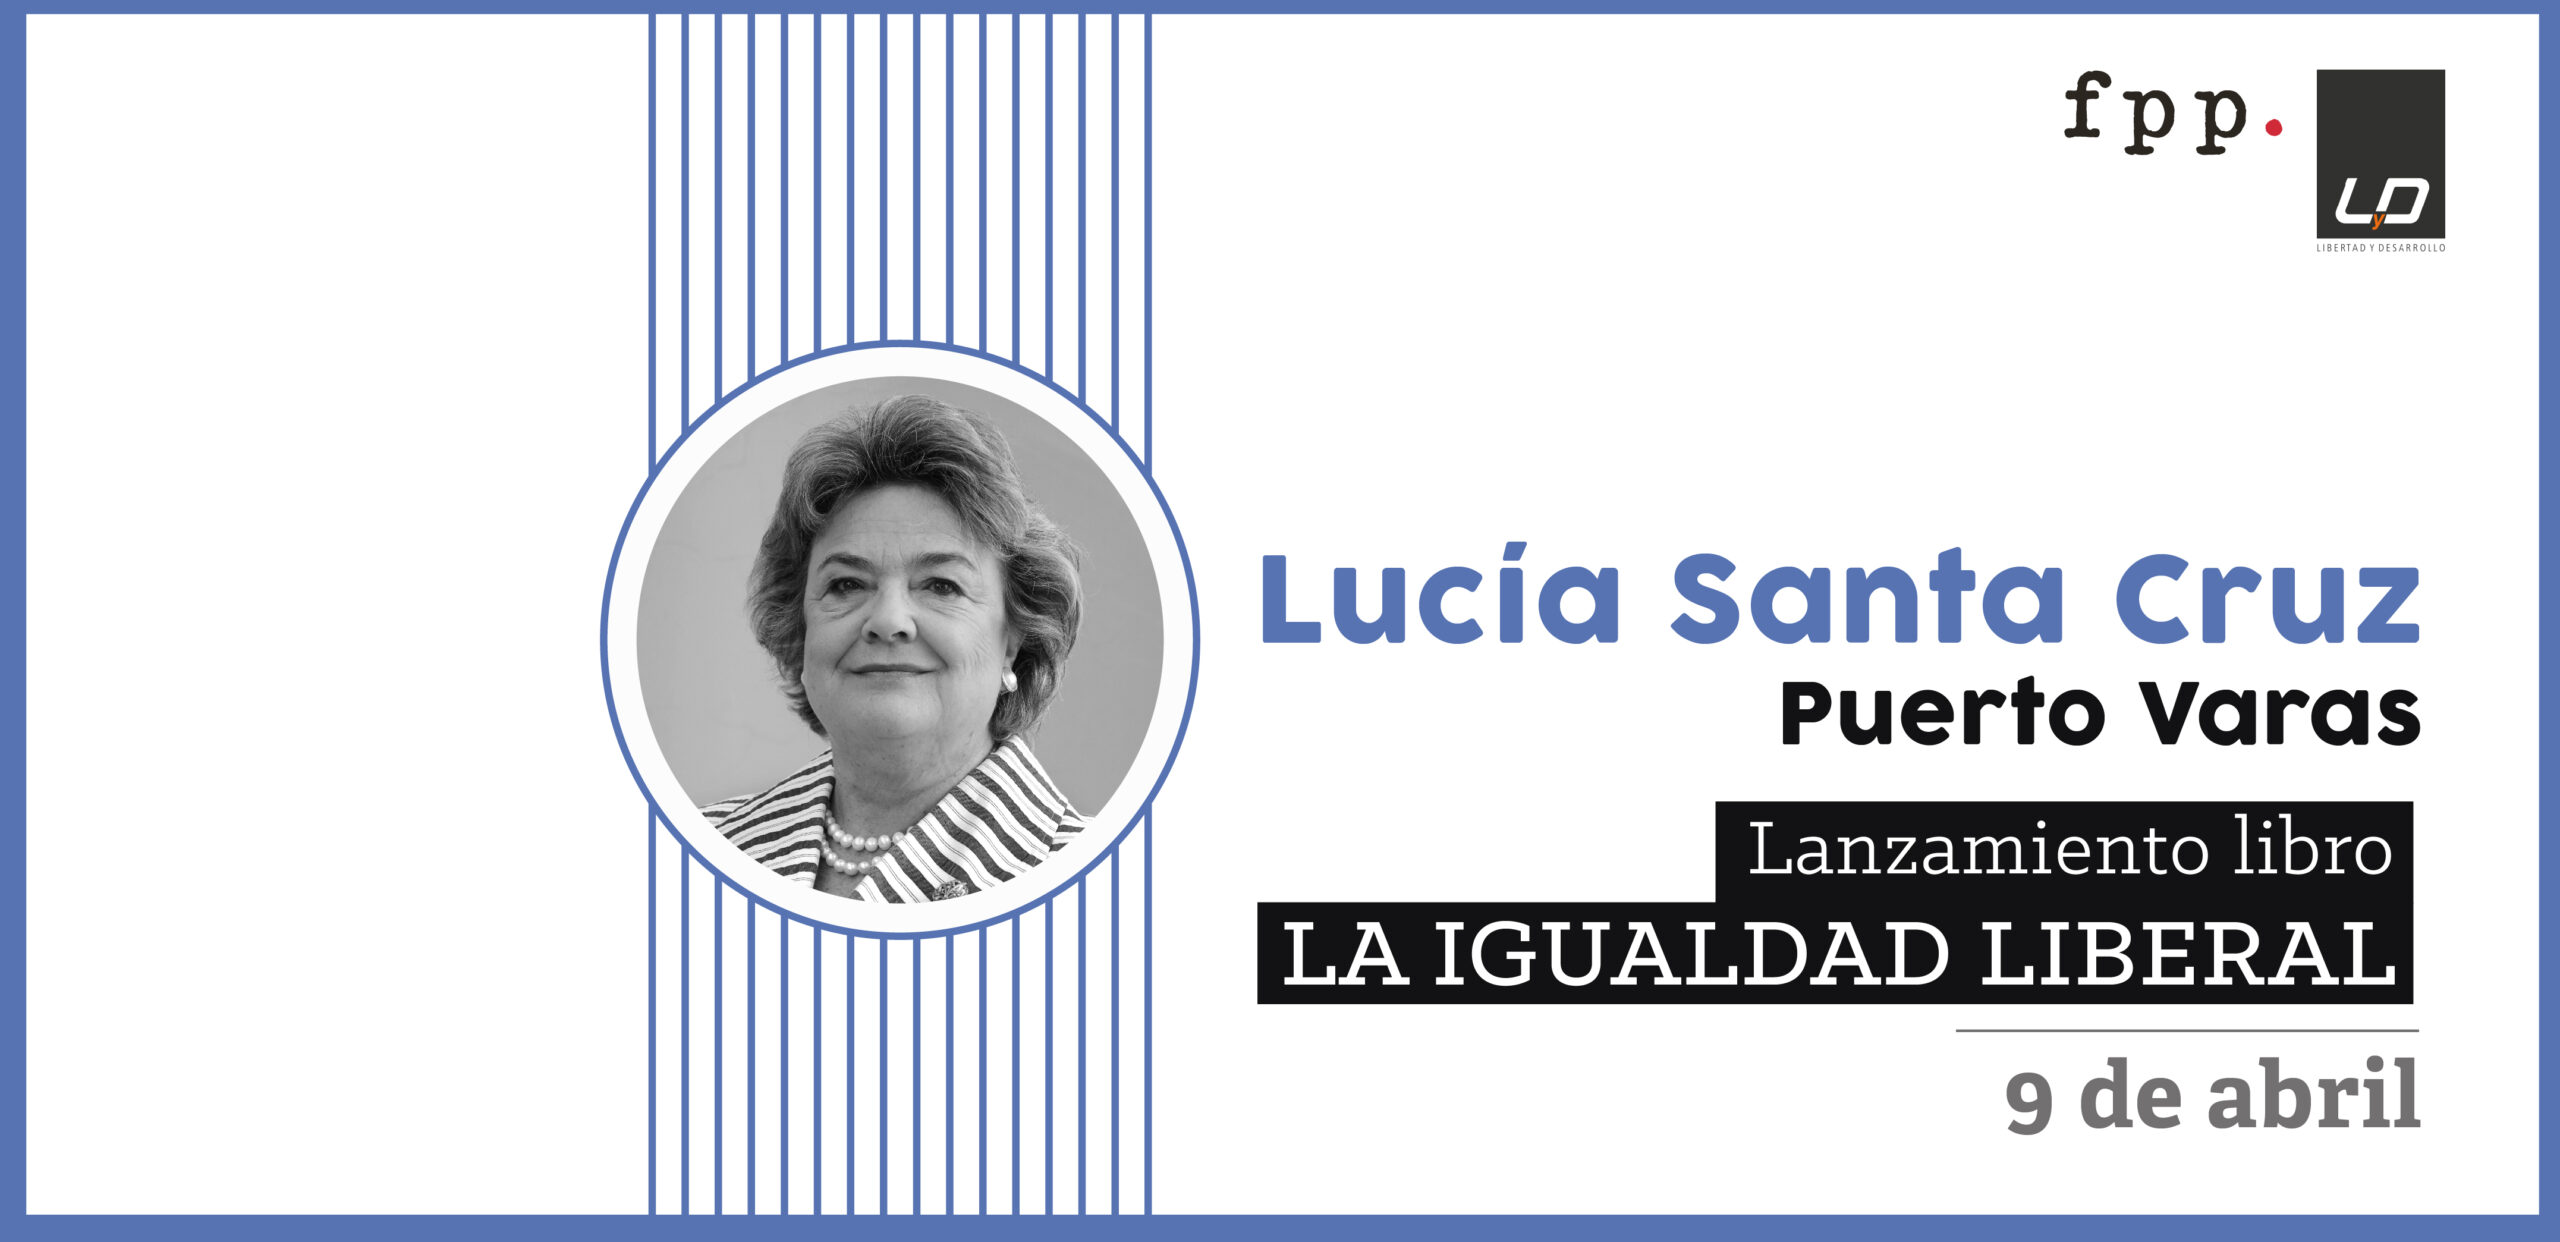 Lanzamiento libro: “La igualdad liberal” de Lucía Santa Cruz en Puerto Varas